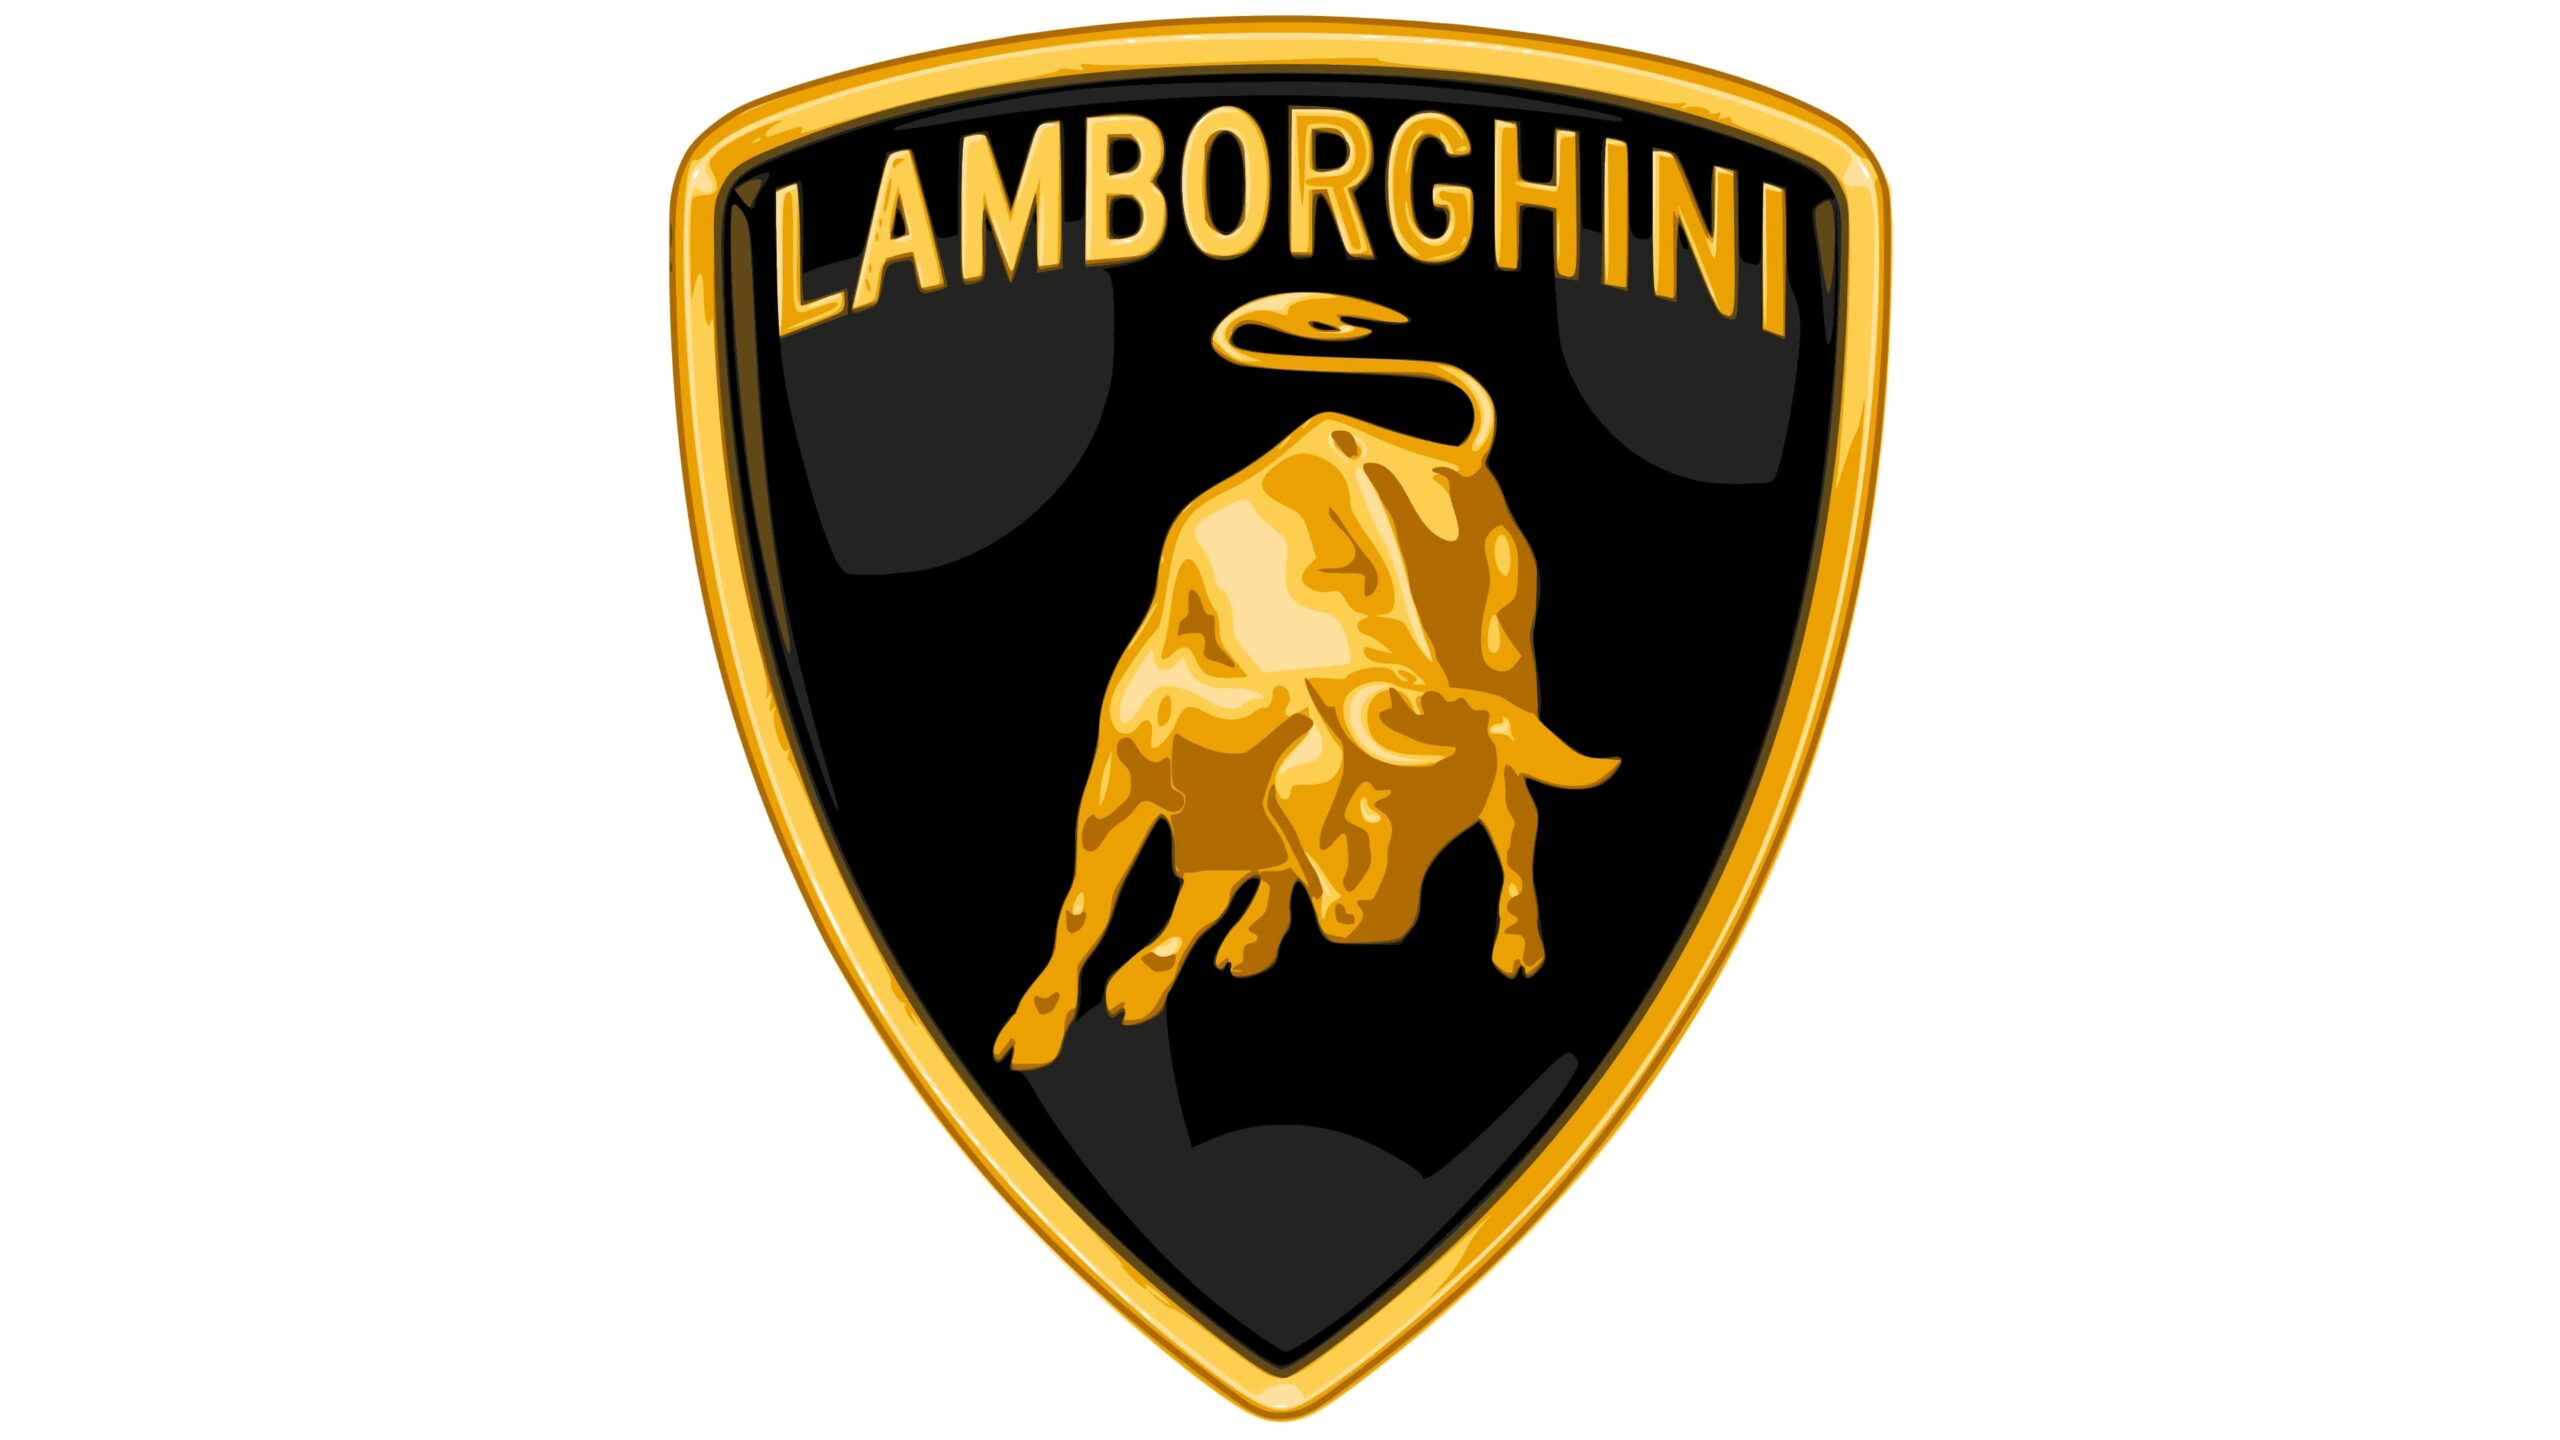 Logo Lamborghini - jak zmieniało się logo tej włoskiej marki?